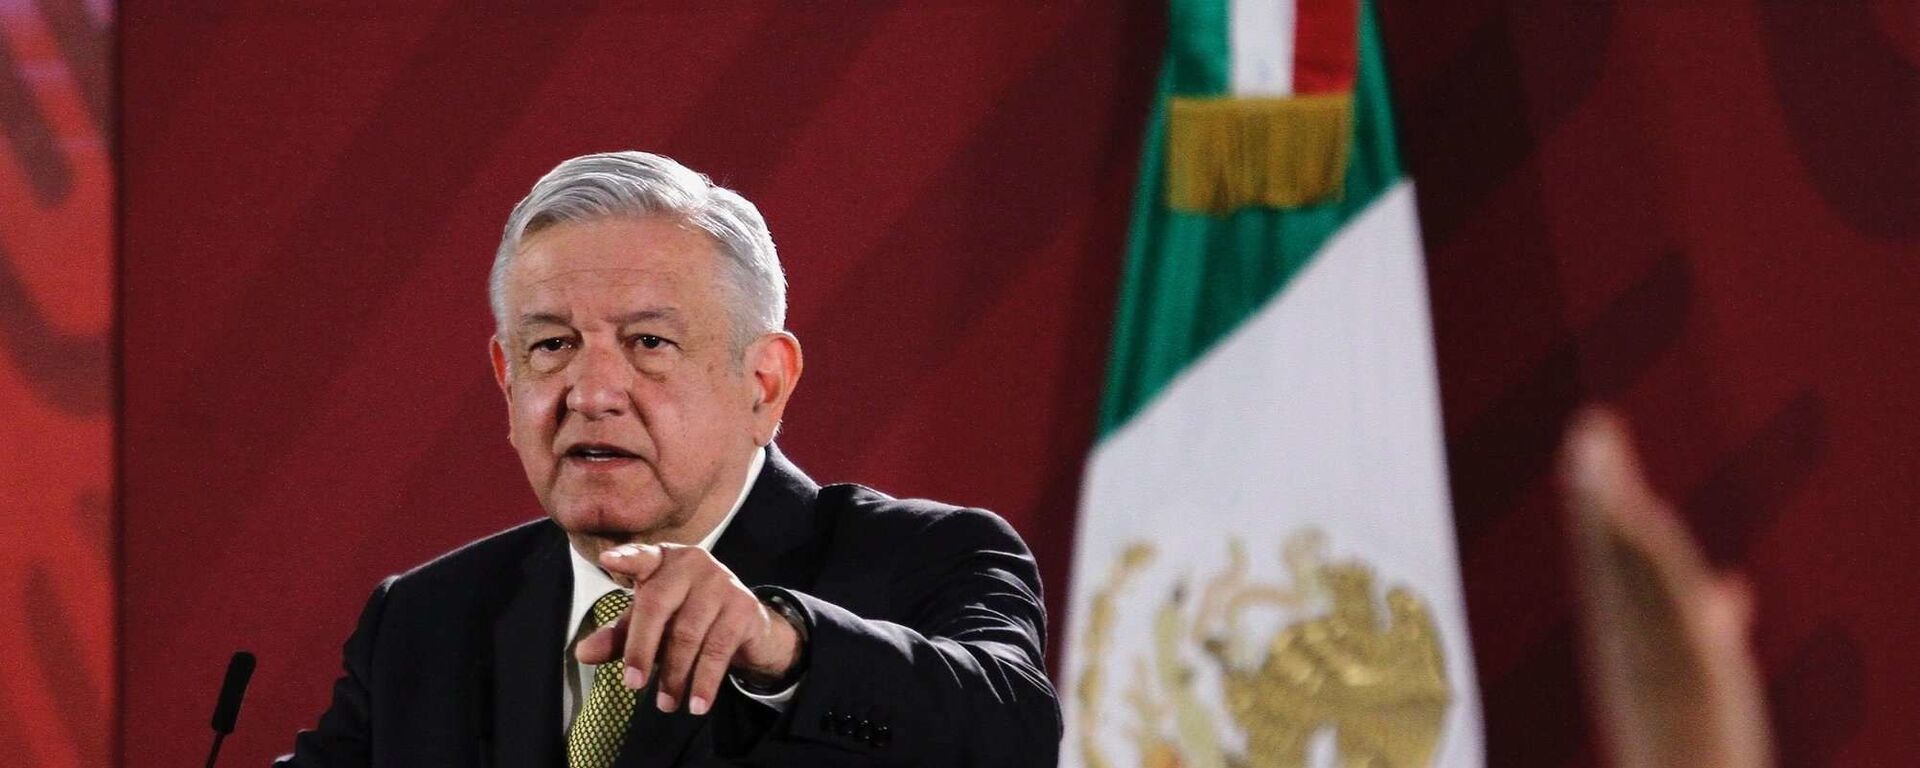 Andrés Manuel López Obrador, presidente de México - Sputnik Mundo, 1920, 12.04.2021